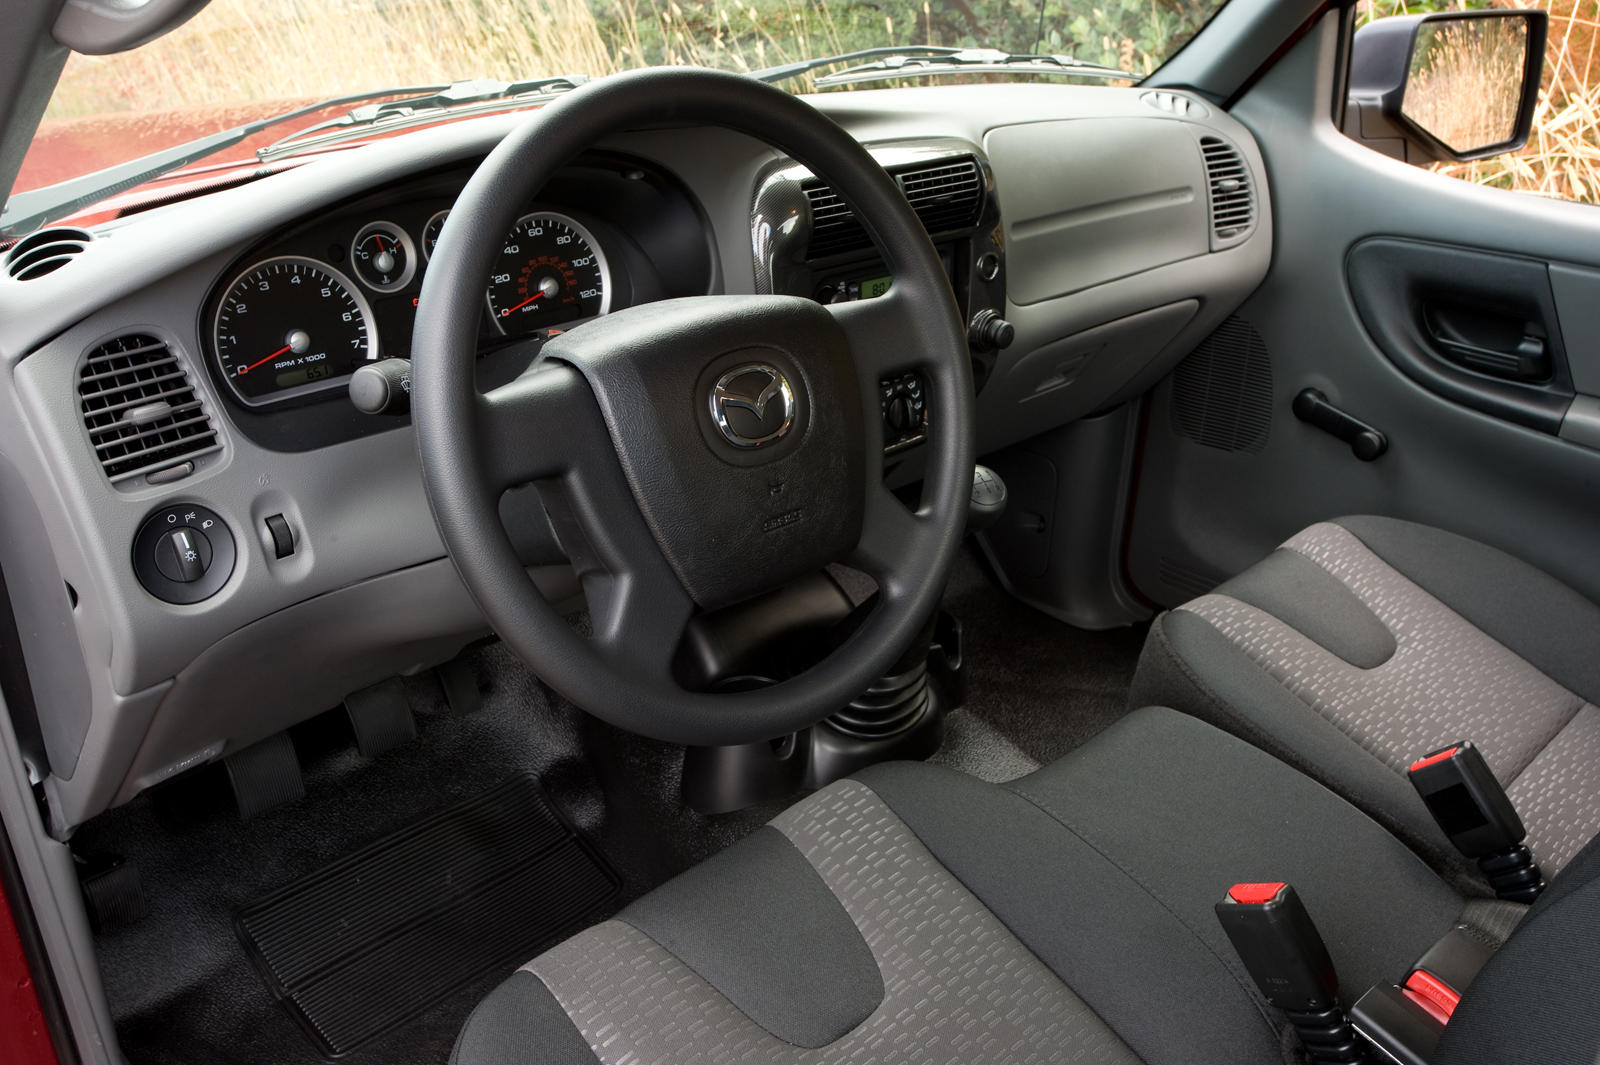 2008 Mazda B-Series Interior Photos | CarBuzz